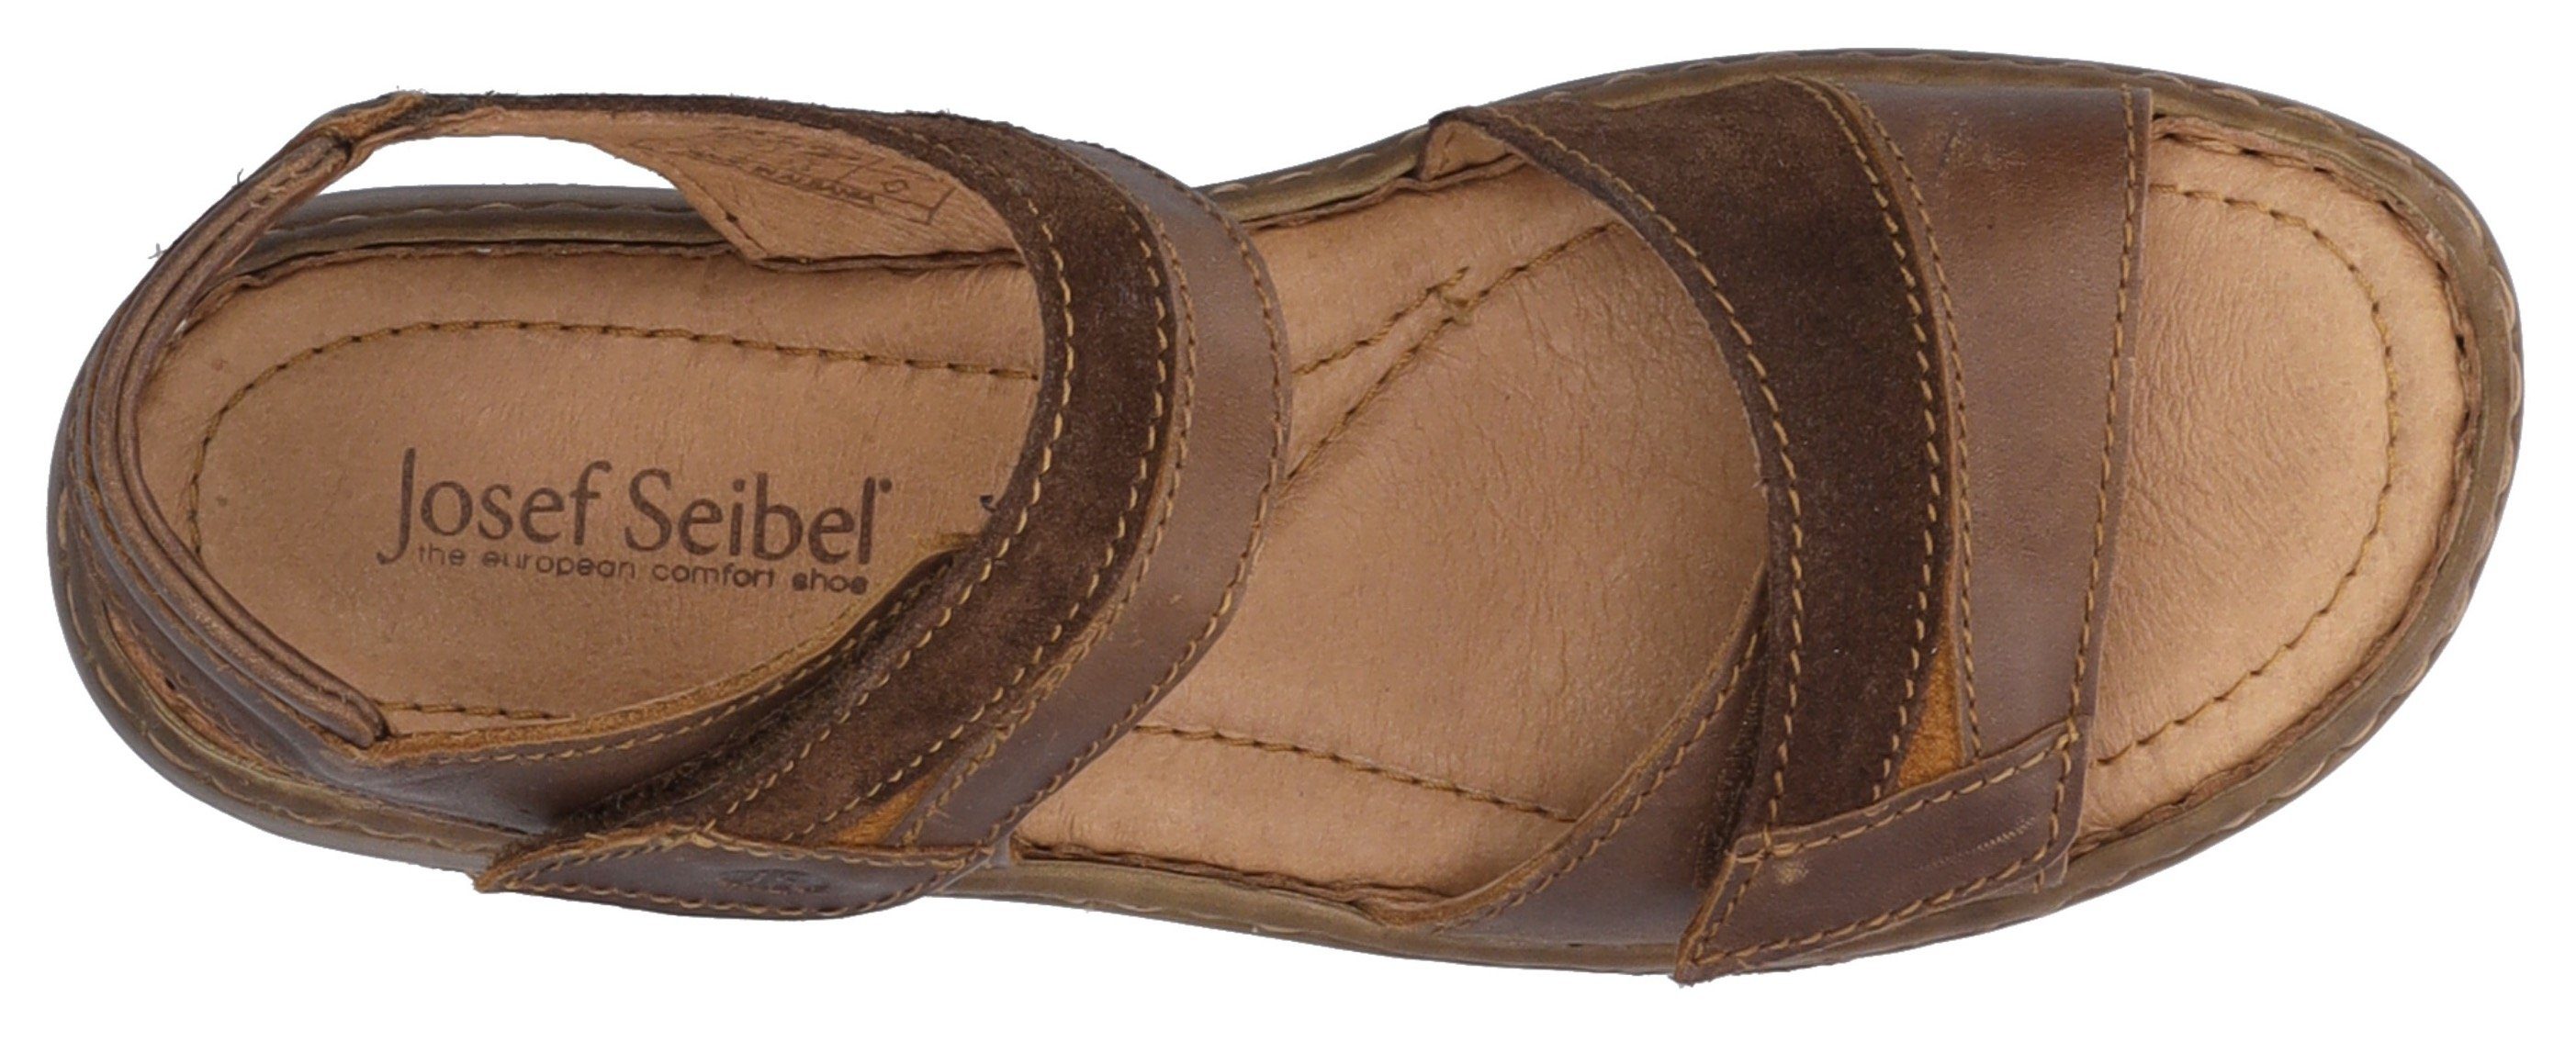 Josef Seibel Debra 19 Sandale mit praktischem Klettverschluss braun